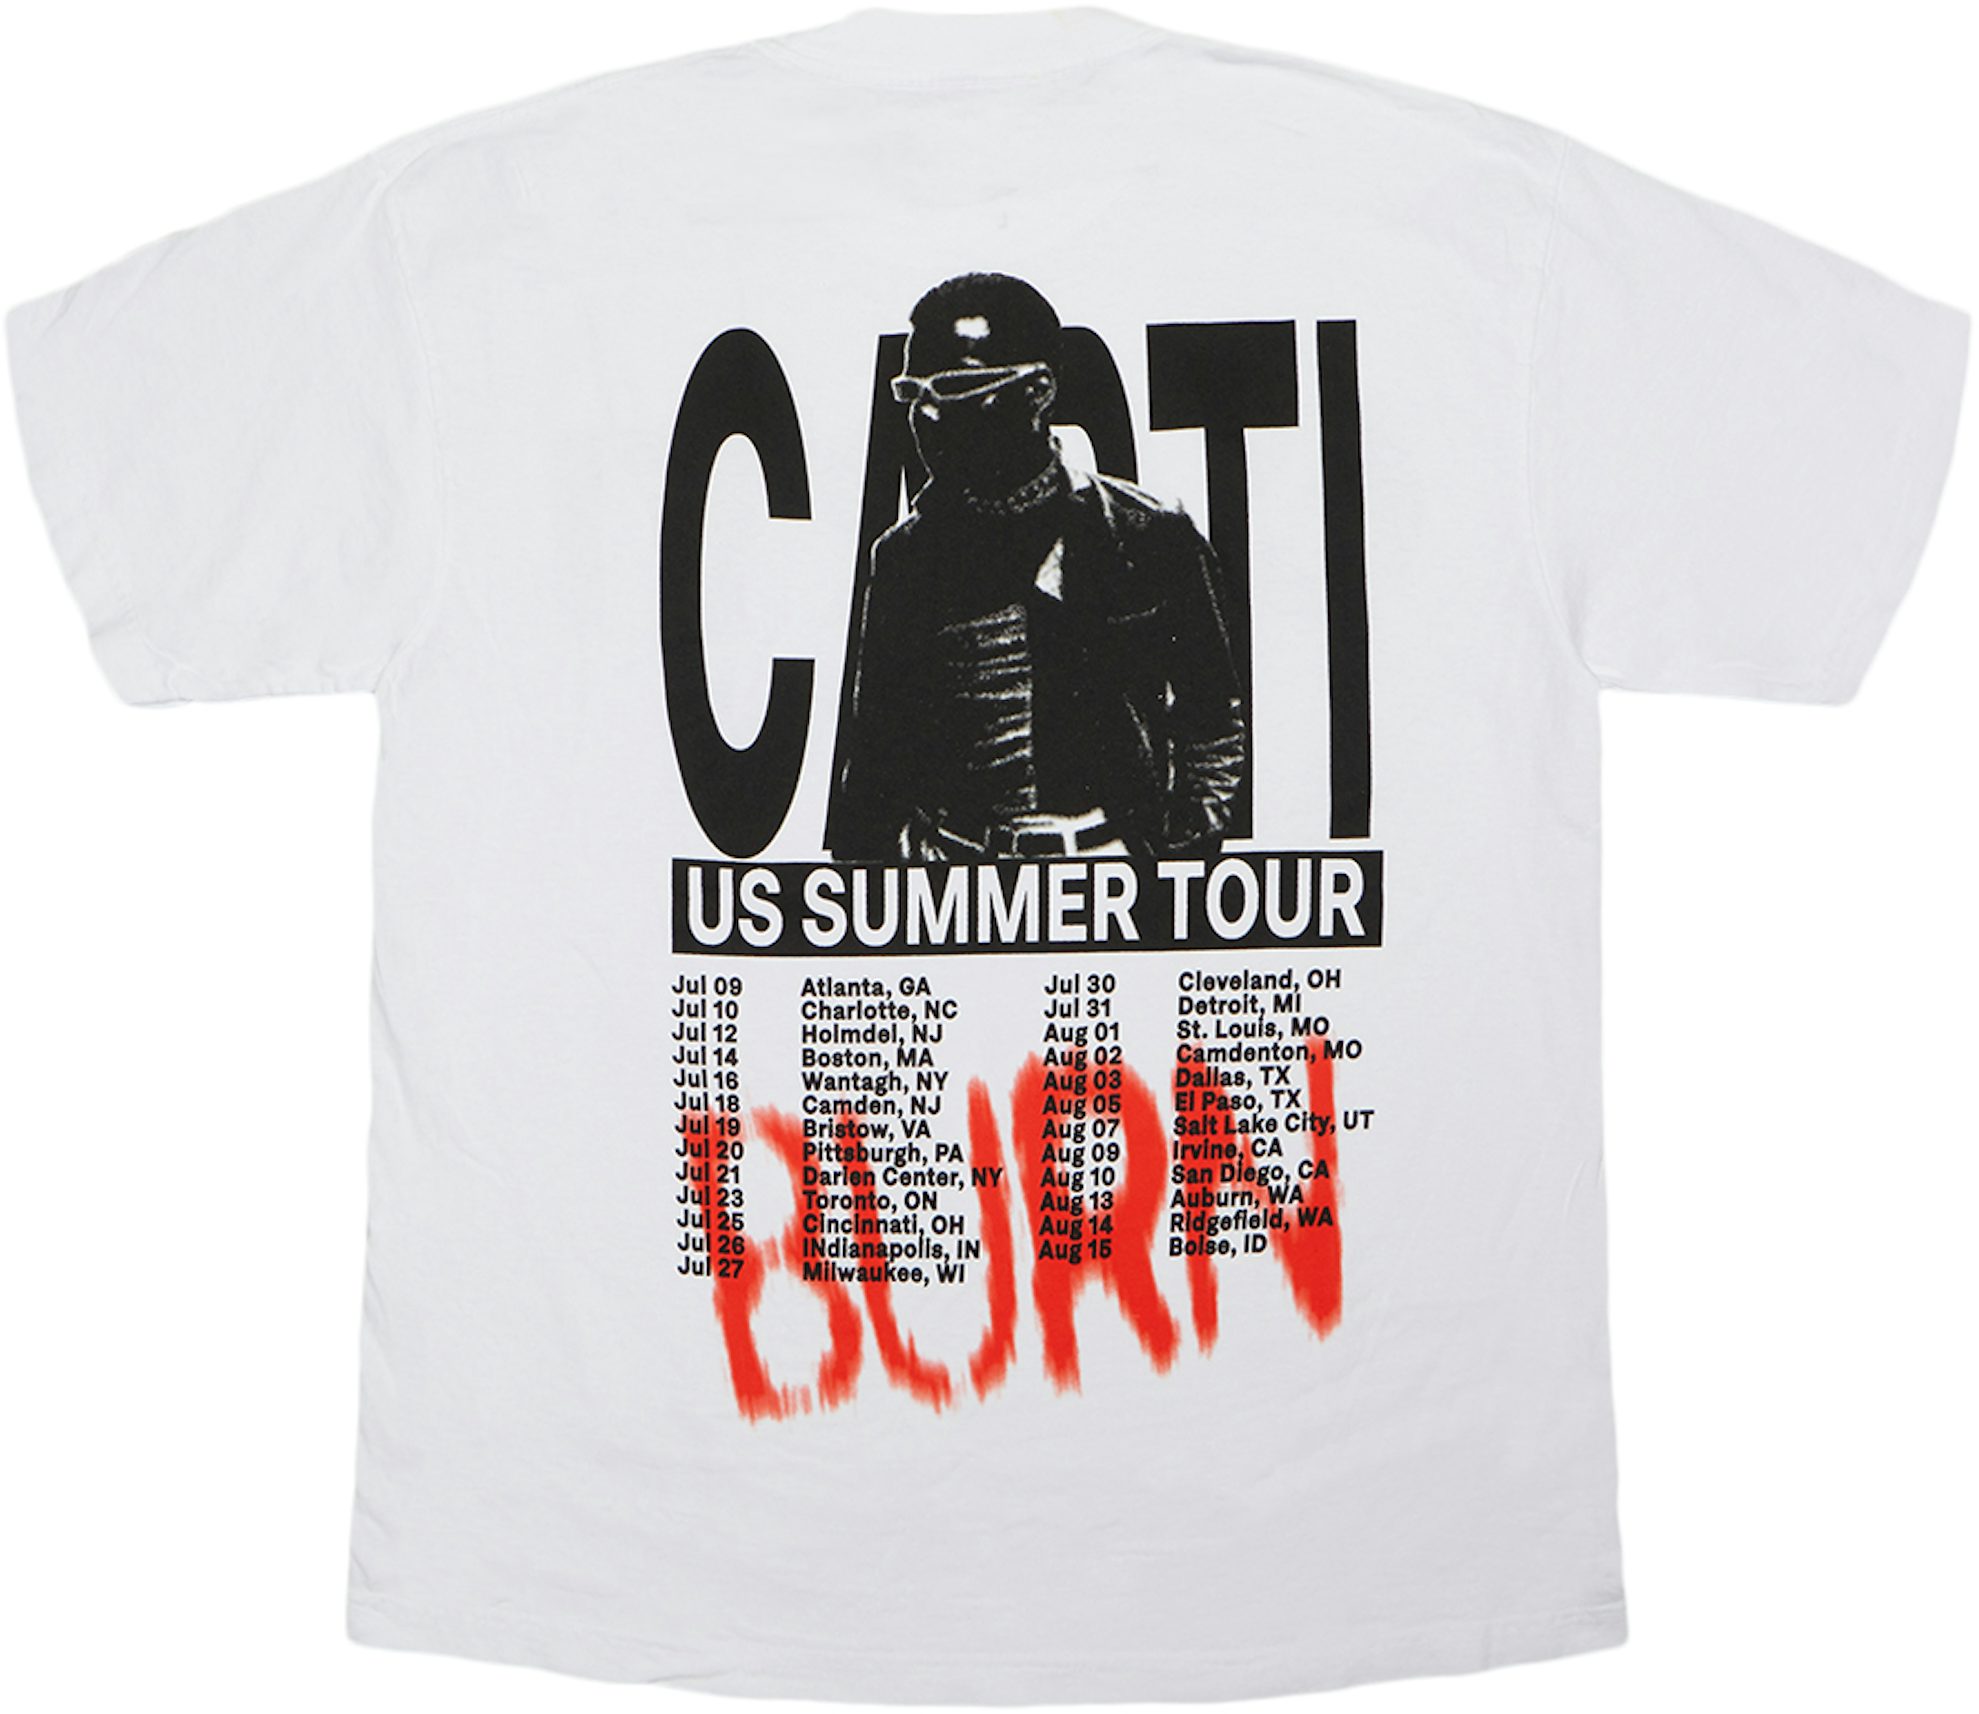 Playboi Carti Rockstar Made Authentic Shirt TOUR